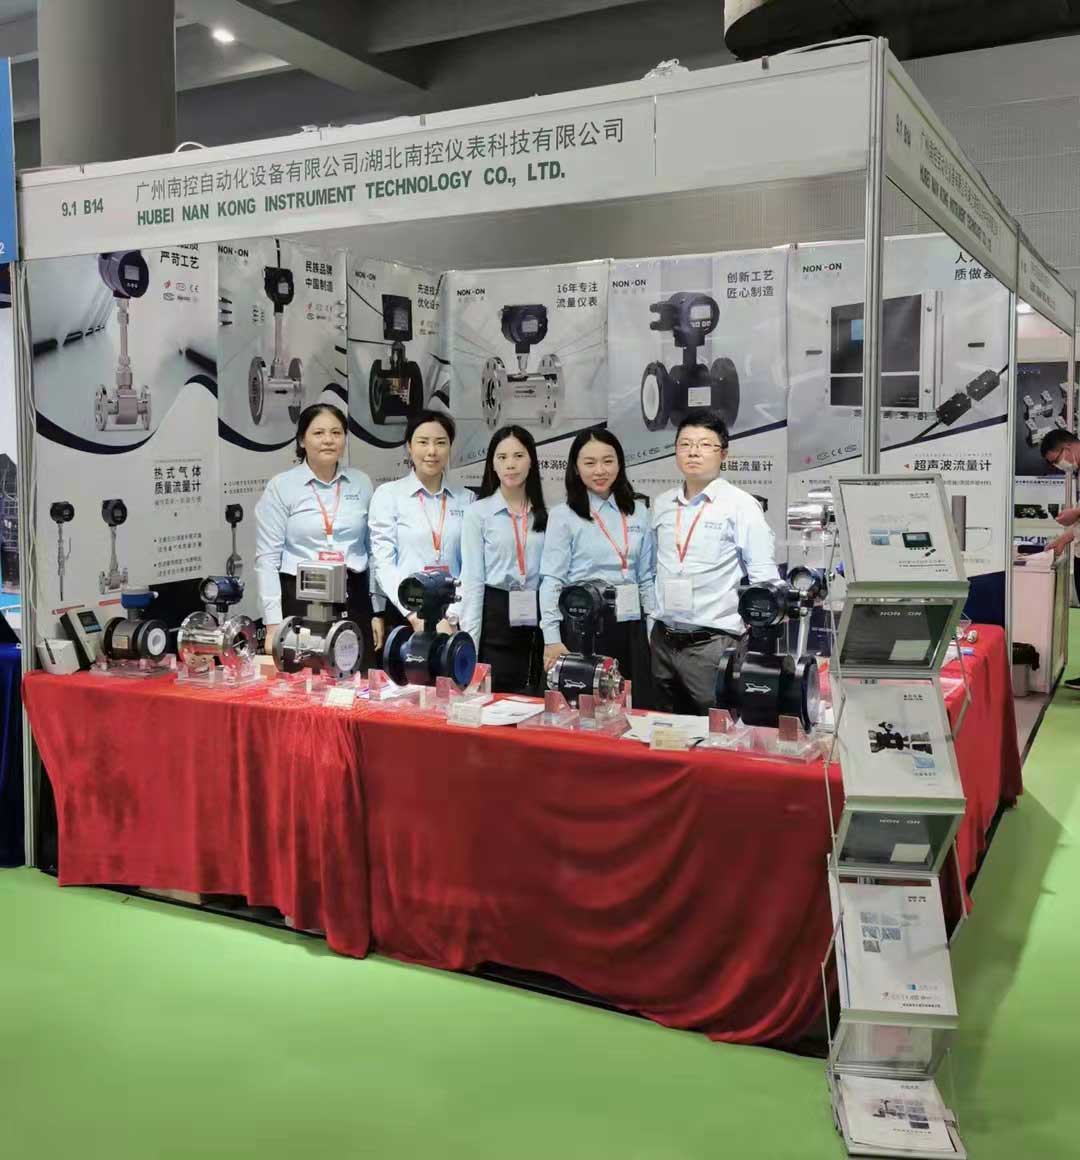  Hubei Nan Kong Instrument Technology Co., Ltd